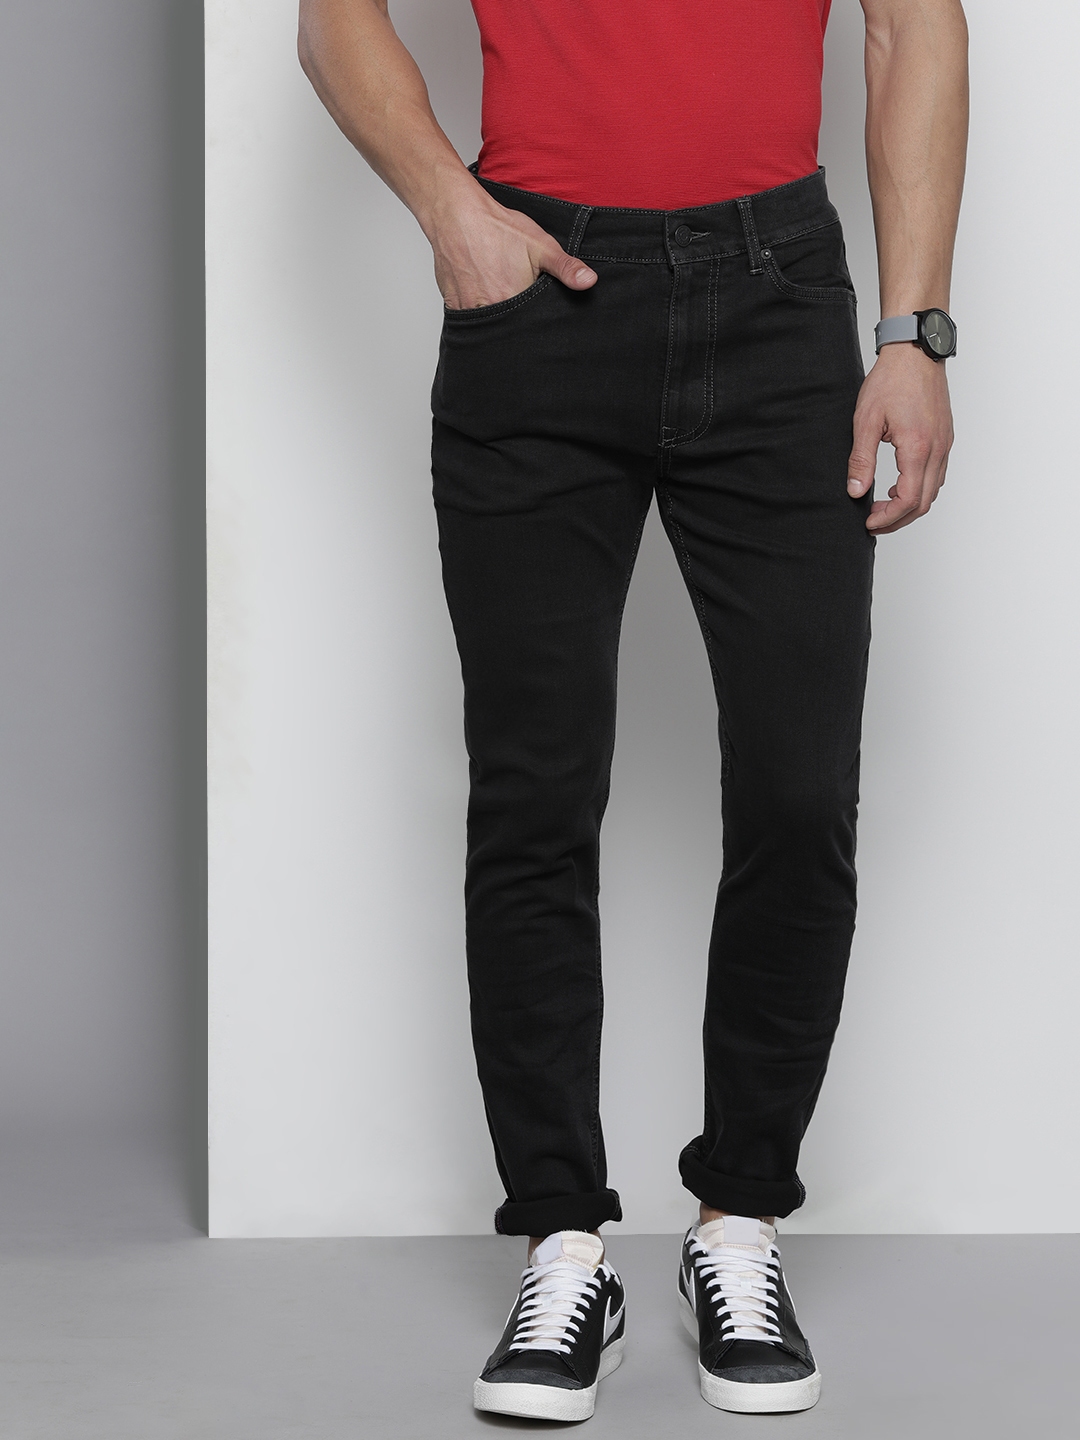 Buy Tommy Hilfiger Men Black Skinny Fit Stretchable Jeans - Jeans for ...